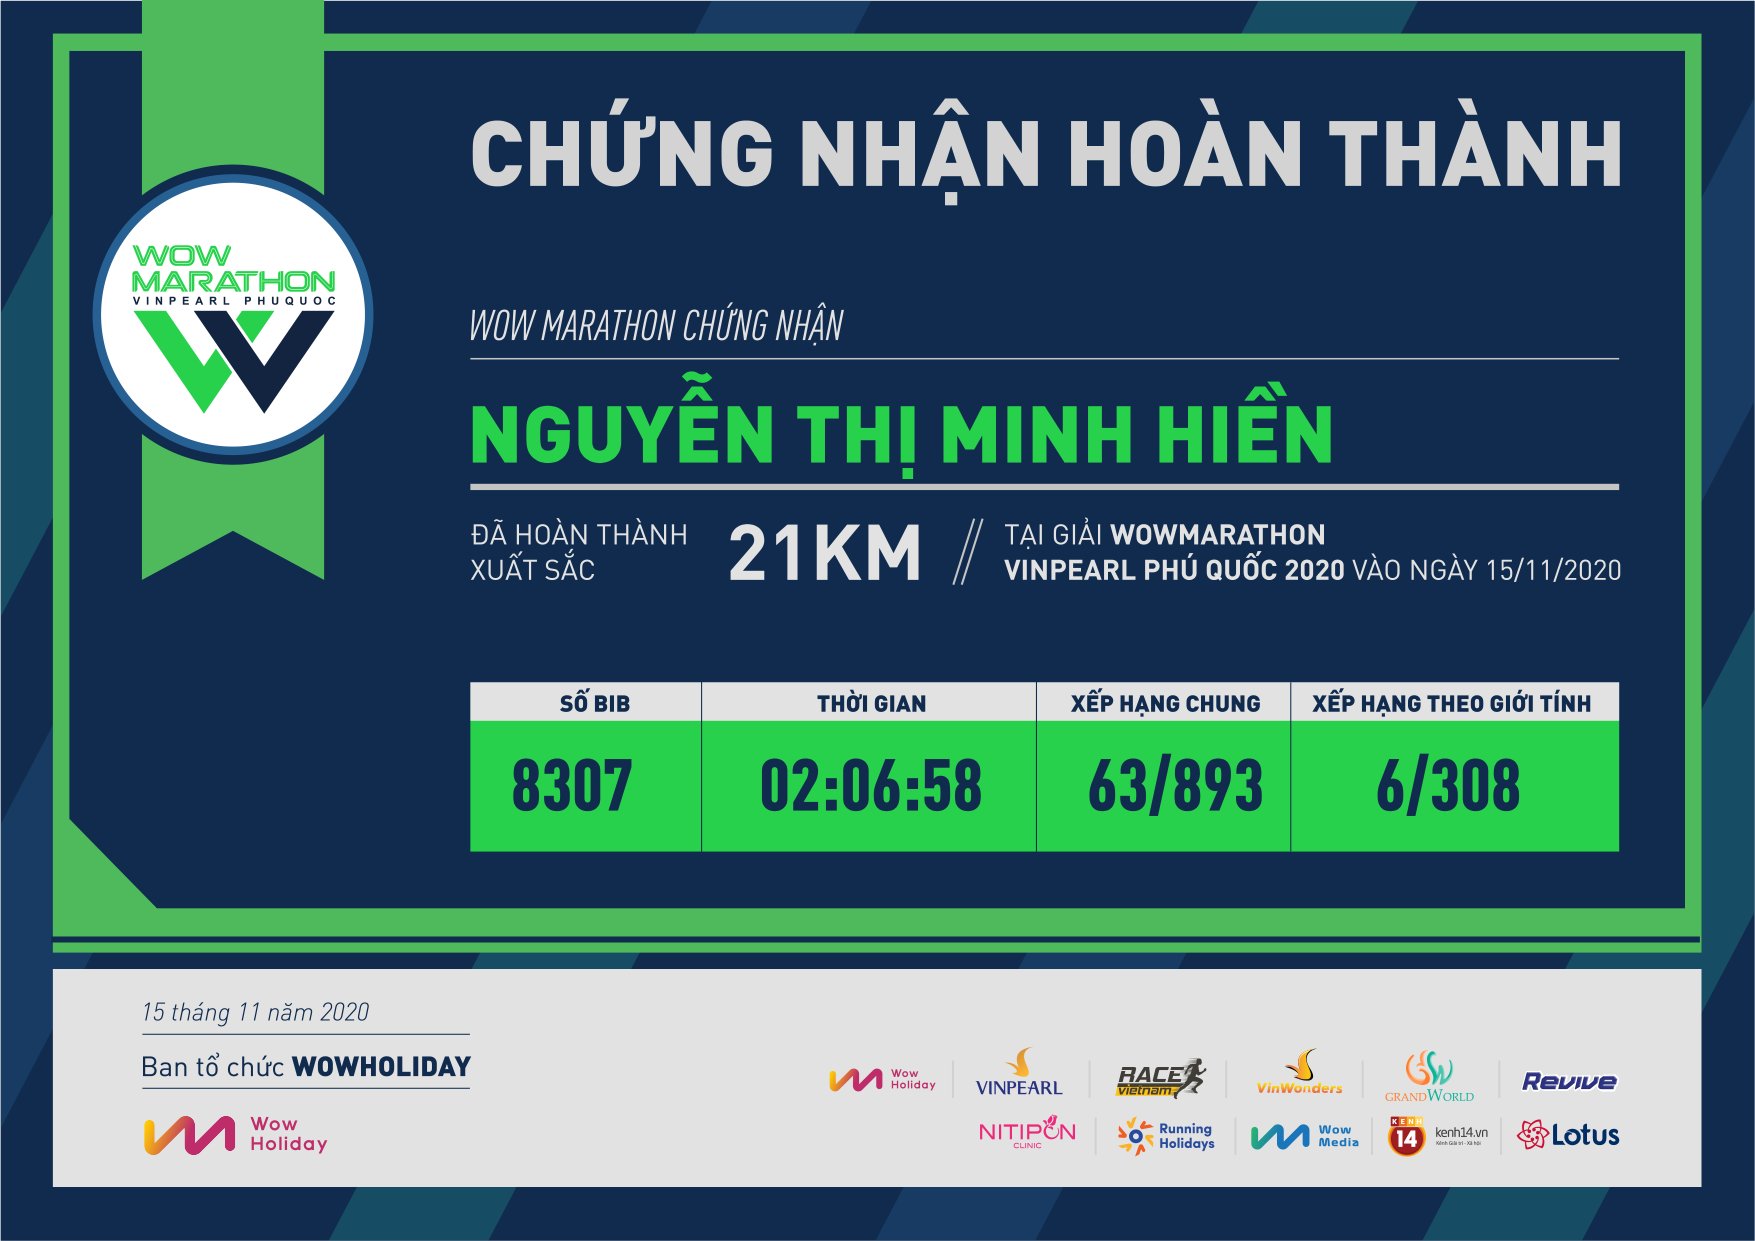 8307 - Nguyễn Thị Minh Hiền